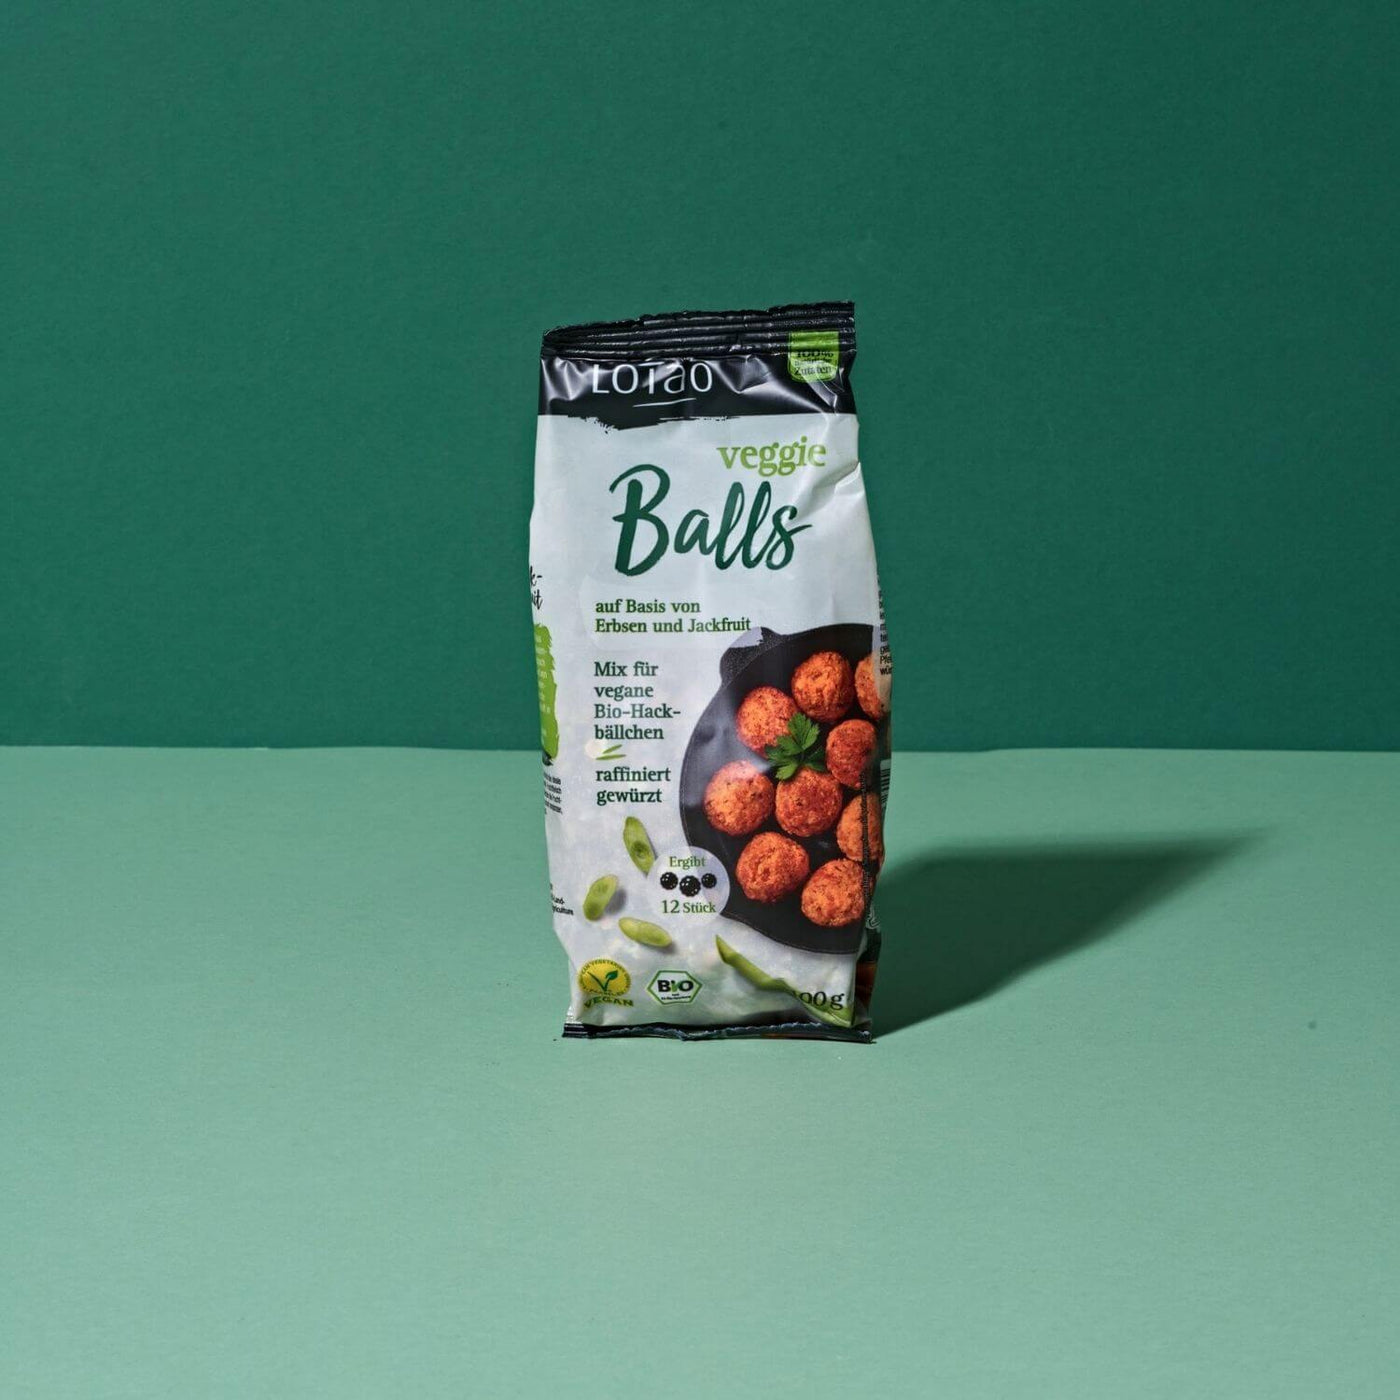 100g Packung vom Lotao Veggie Balls Mix, dem veganen Fleischersatz auf Basis von Jackfruit und Erbsen für saftige vegetarische Hackbällchen in Bio-Qualität vor grünem Hintergrund